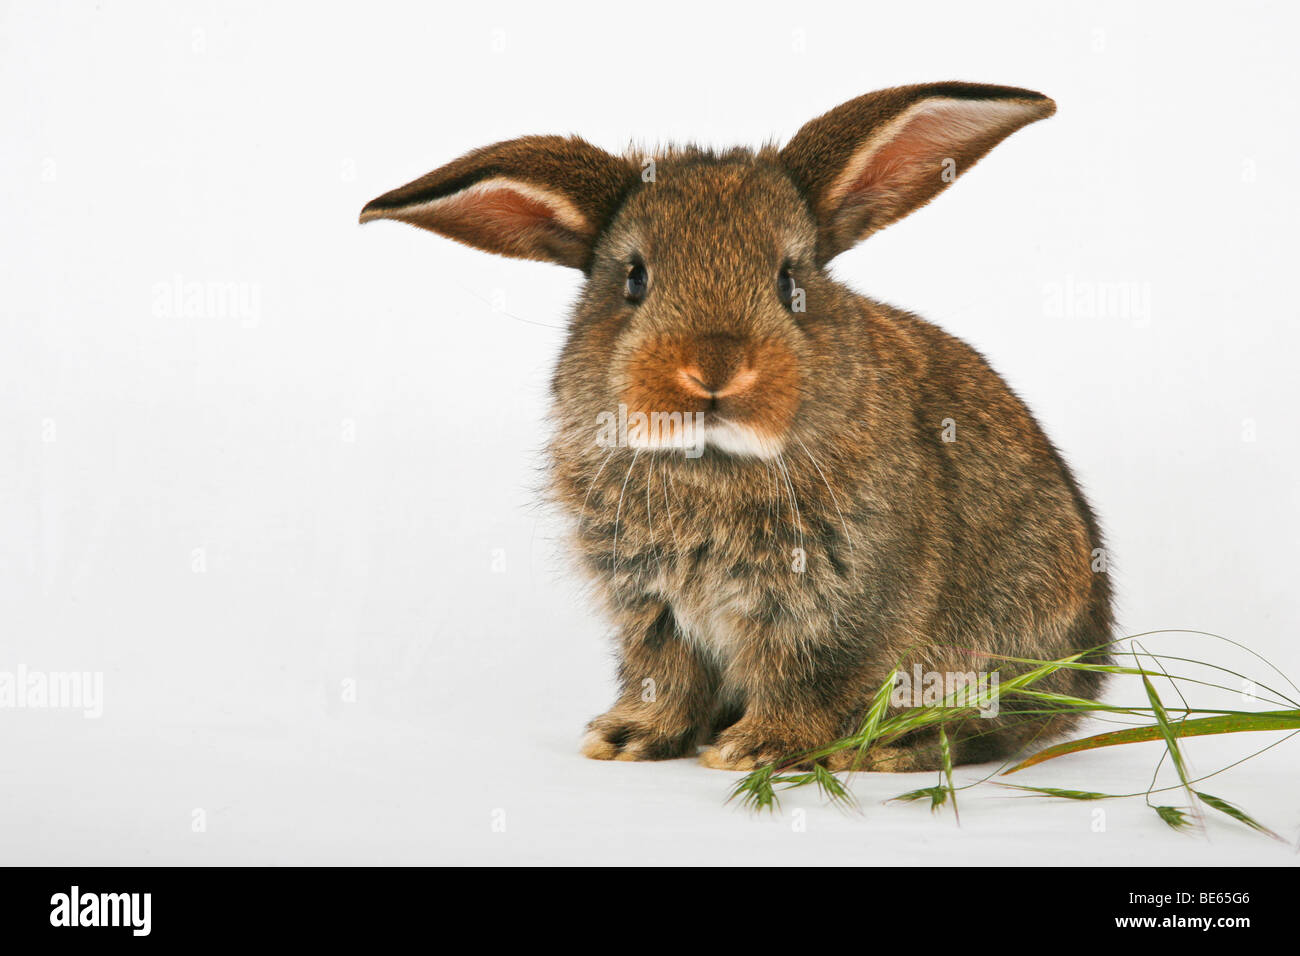 Young pet rabbit Stock Photo